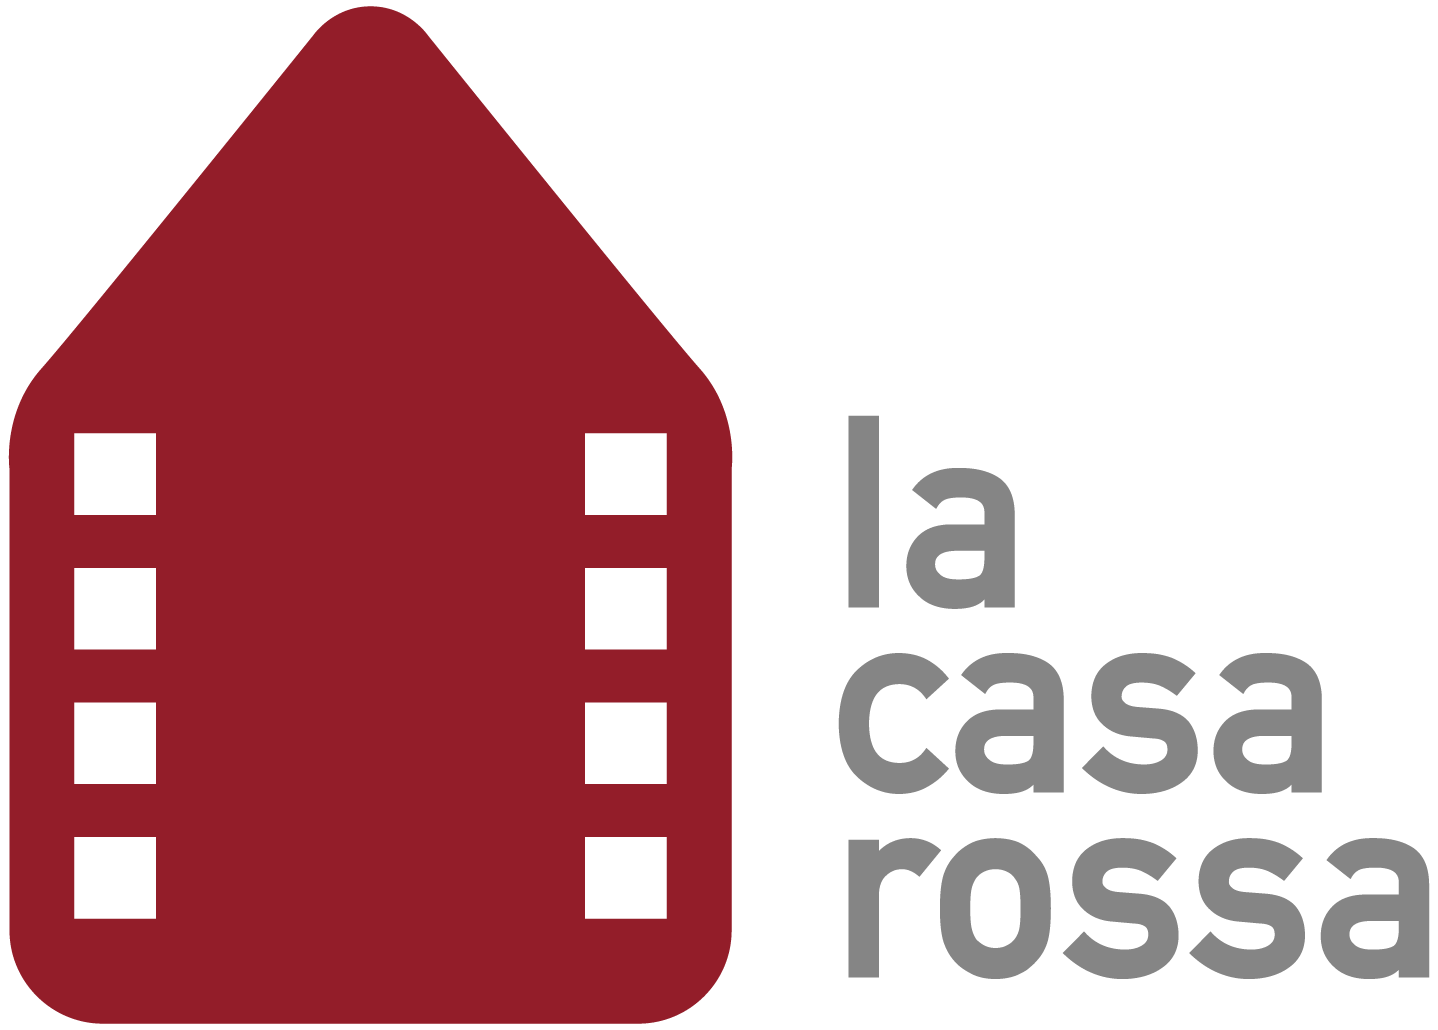 produzioni-cinematografiche-audiovisive-lacasarossa-roma-logo